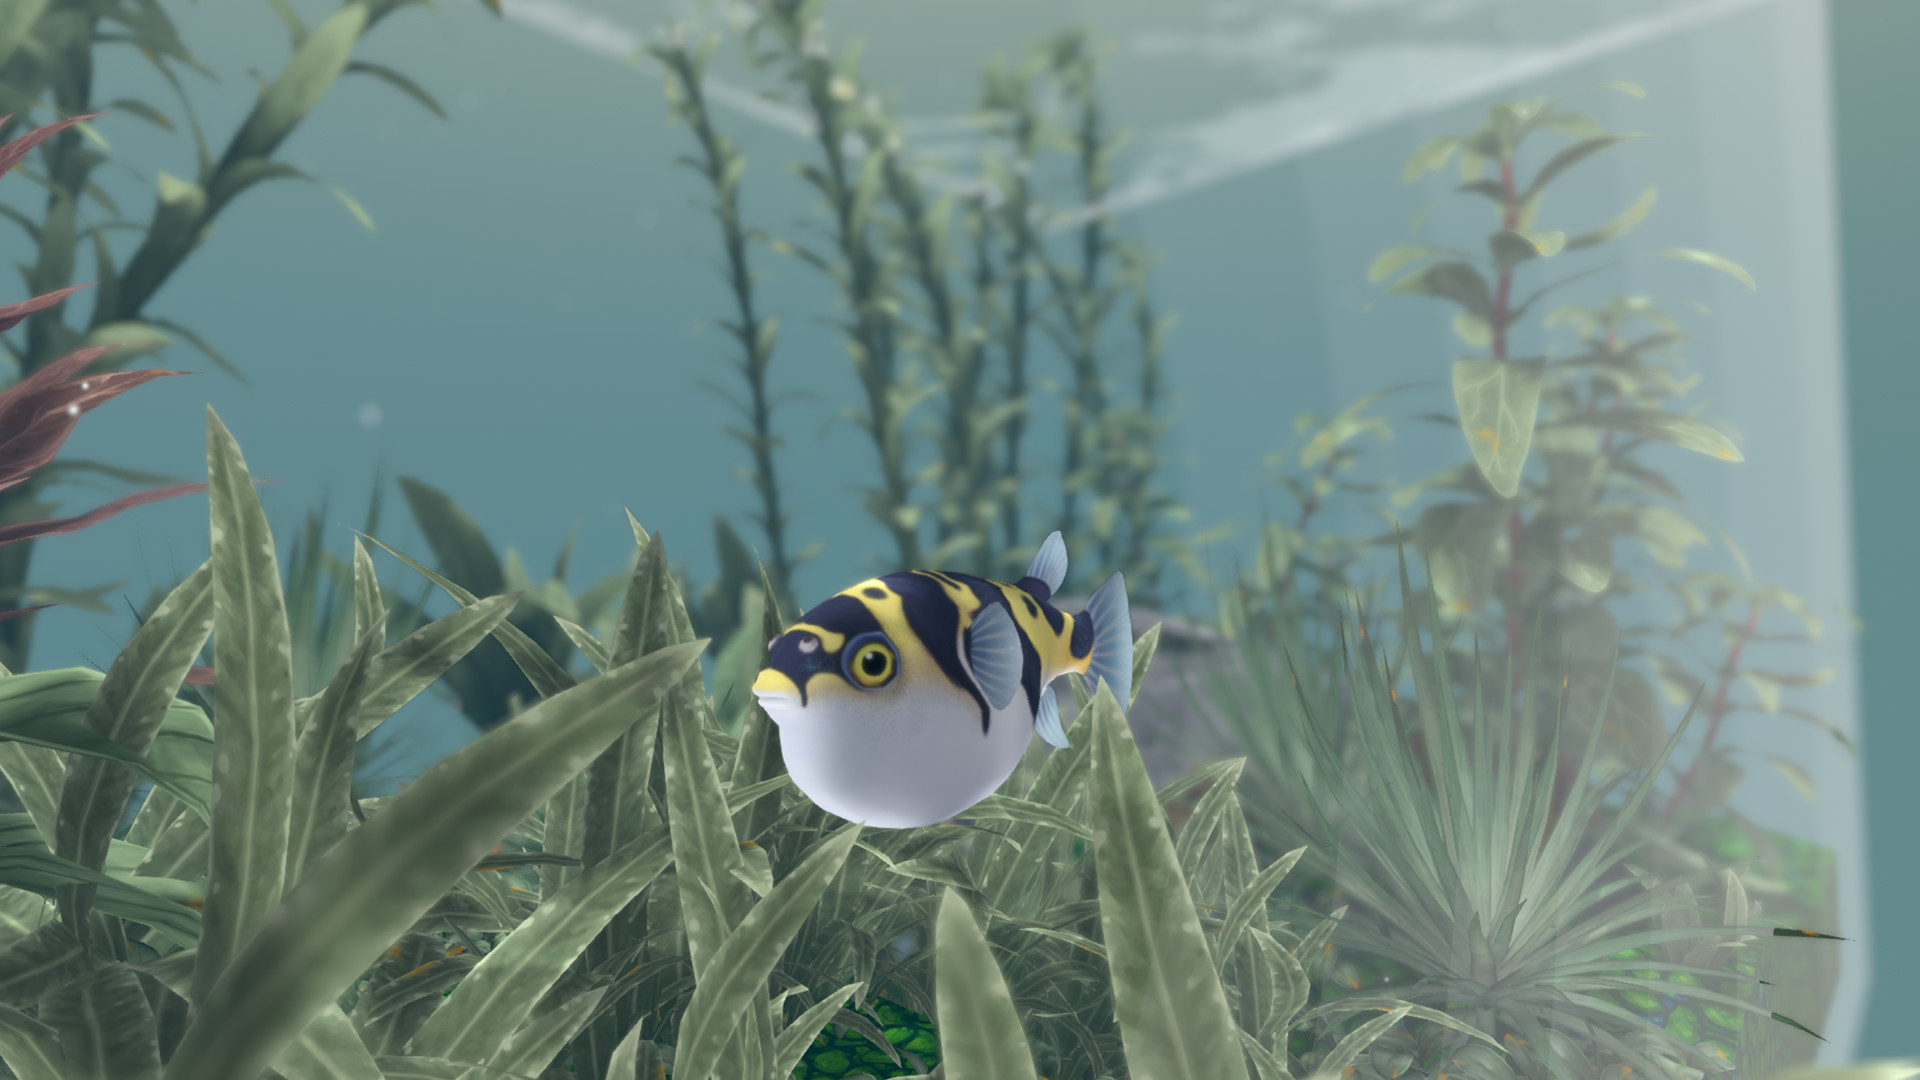 FISHERY screenshot